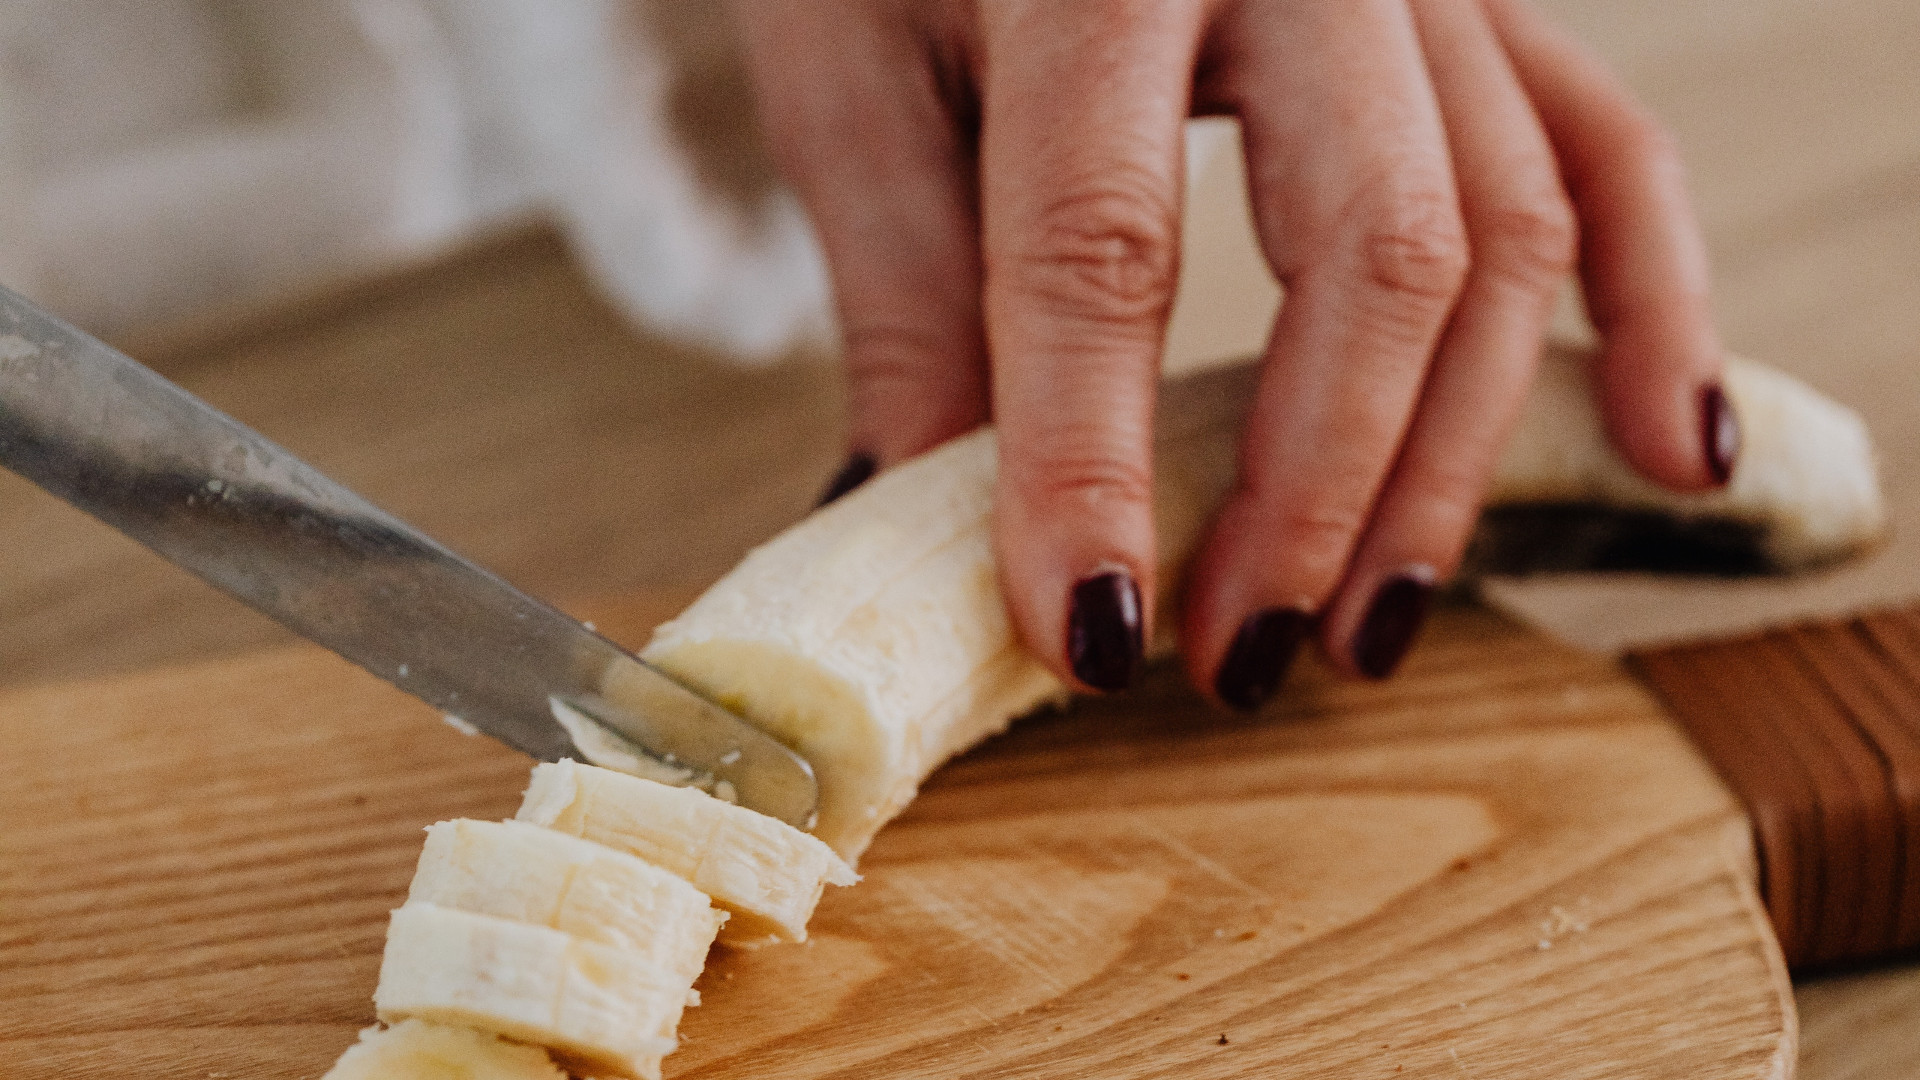 Plano detalle de una mano femenina cortando una banana en rodajas